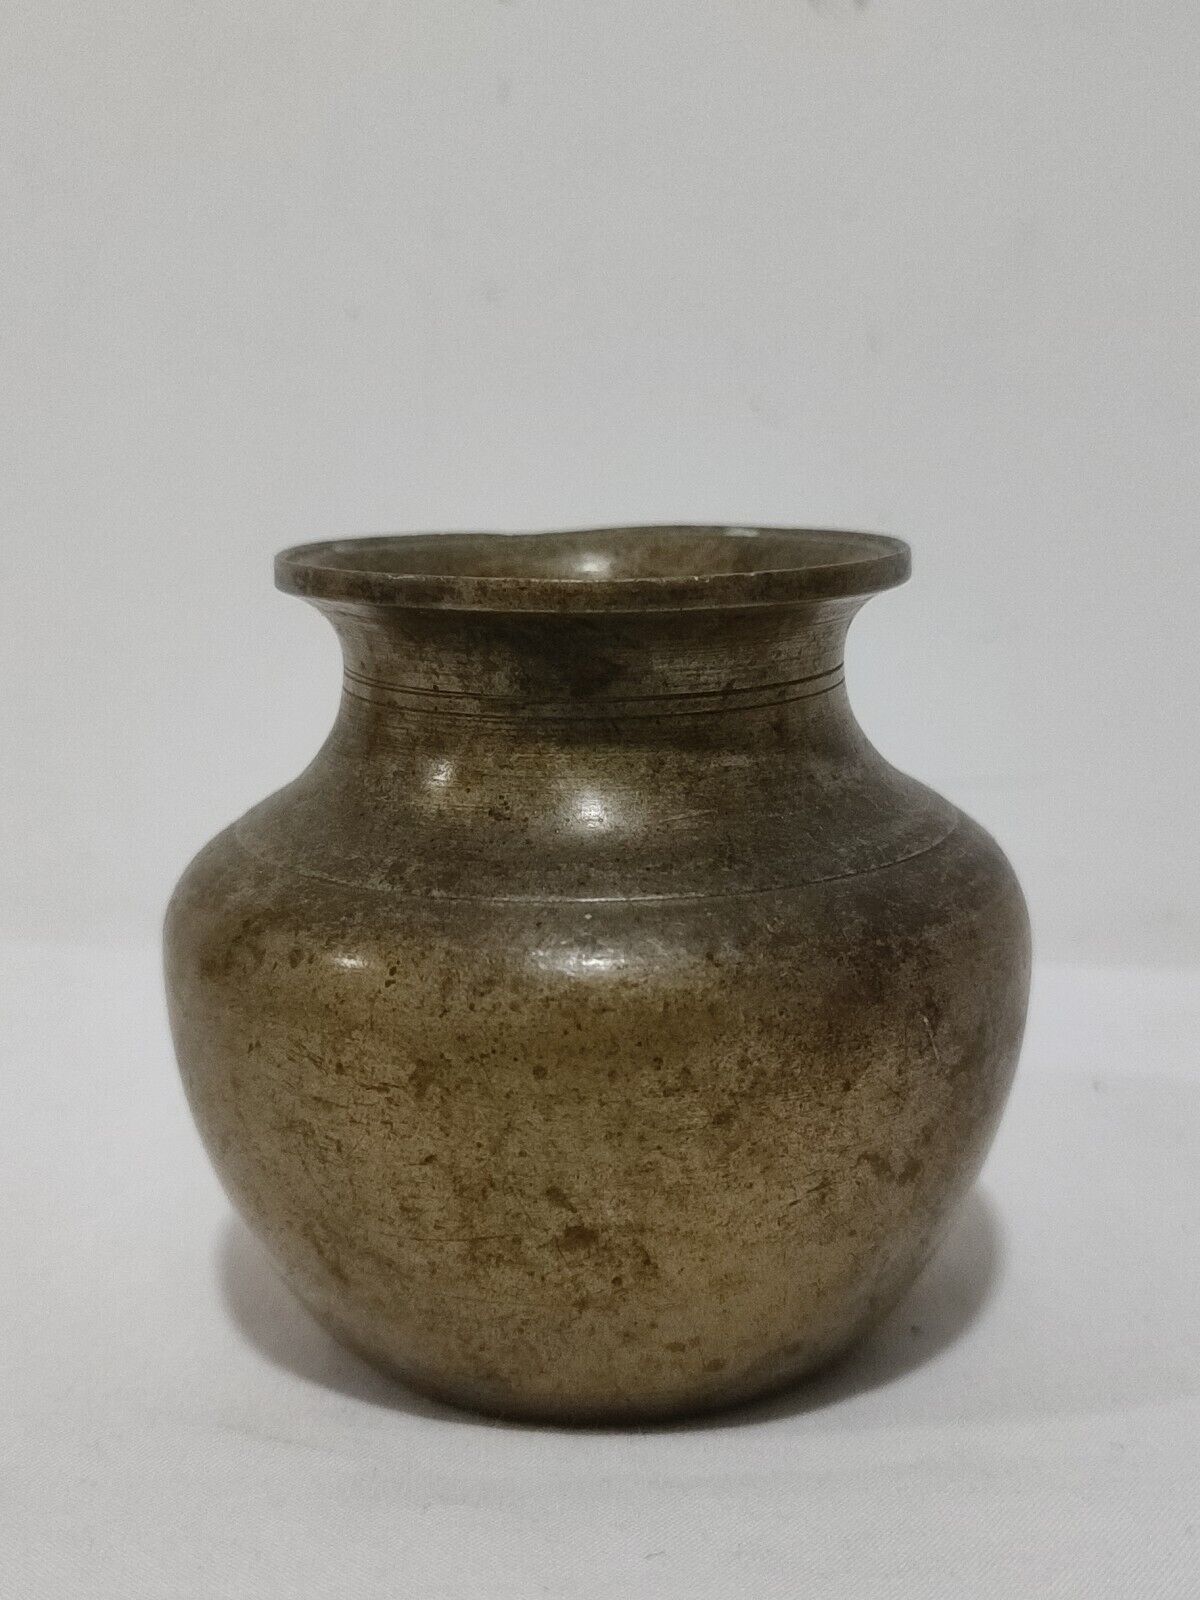 Rare Antique Water Pot Round Shape Brass Vessel Collectible Kitchenware Ceylon 